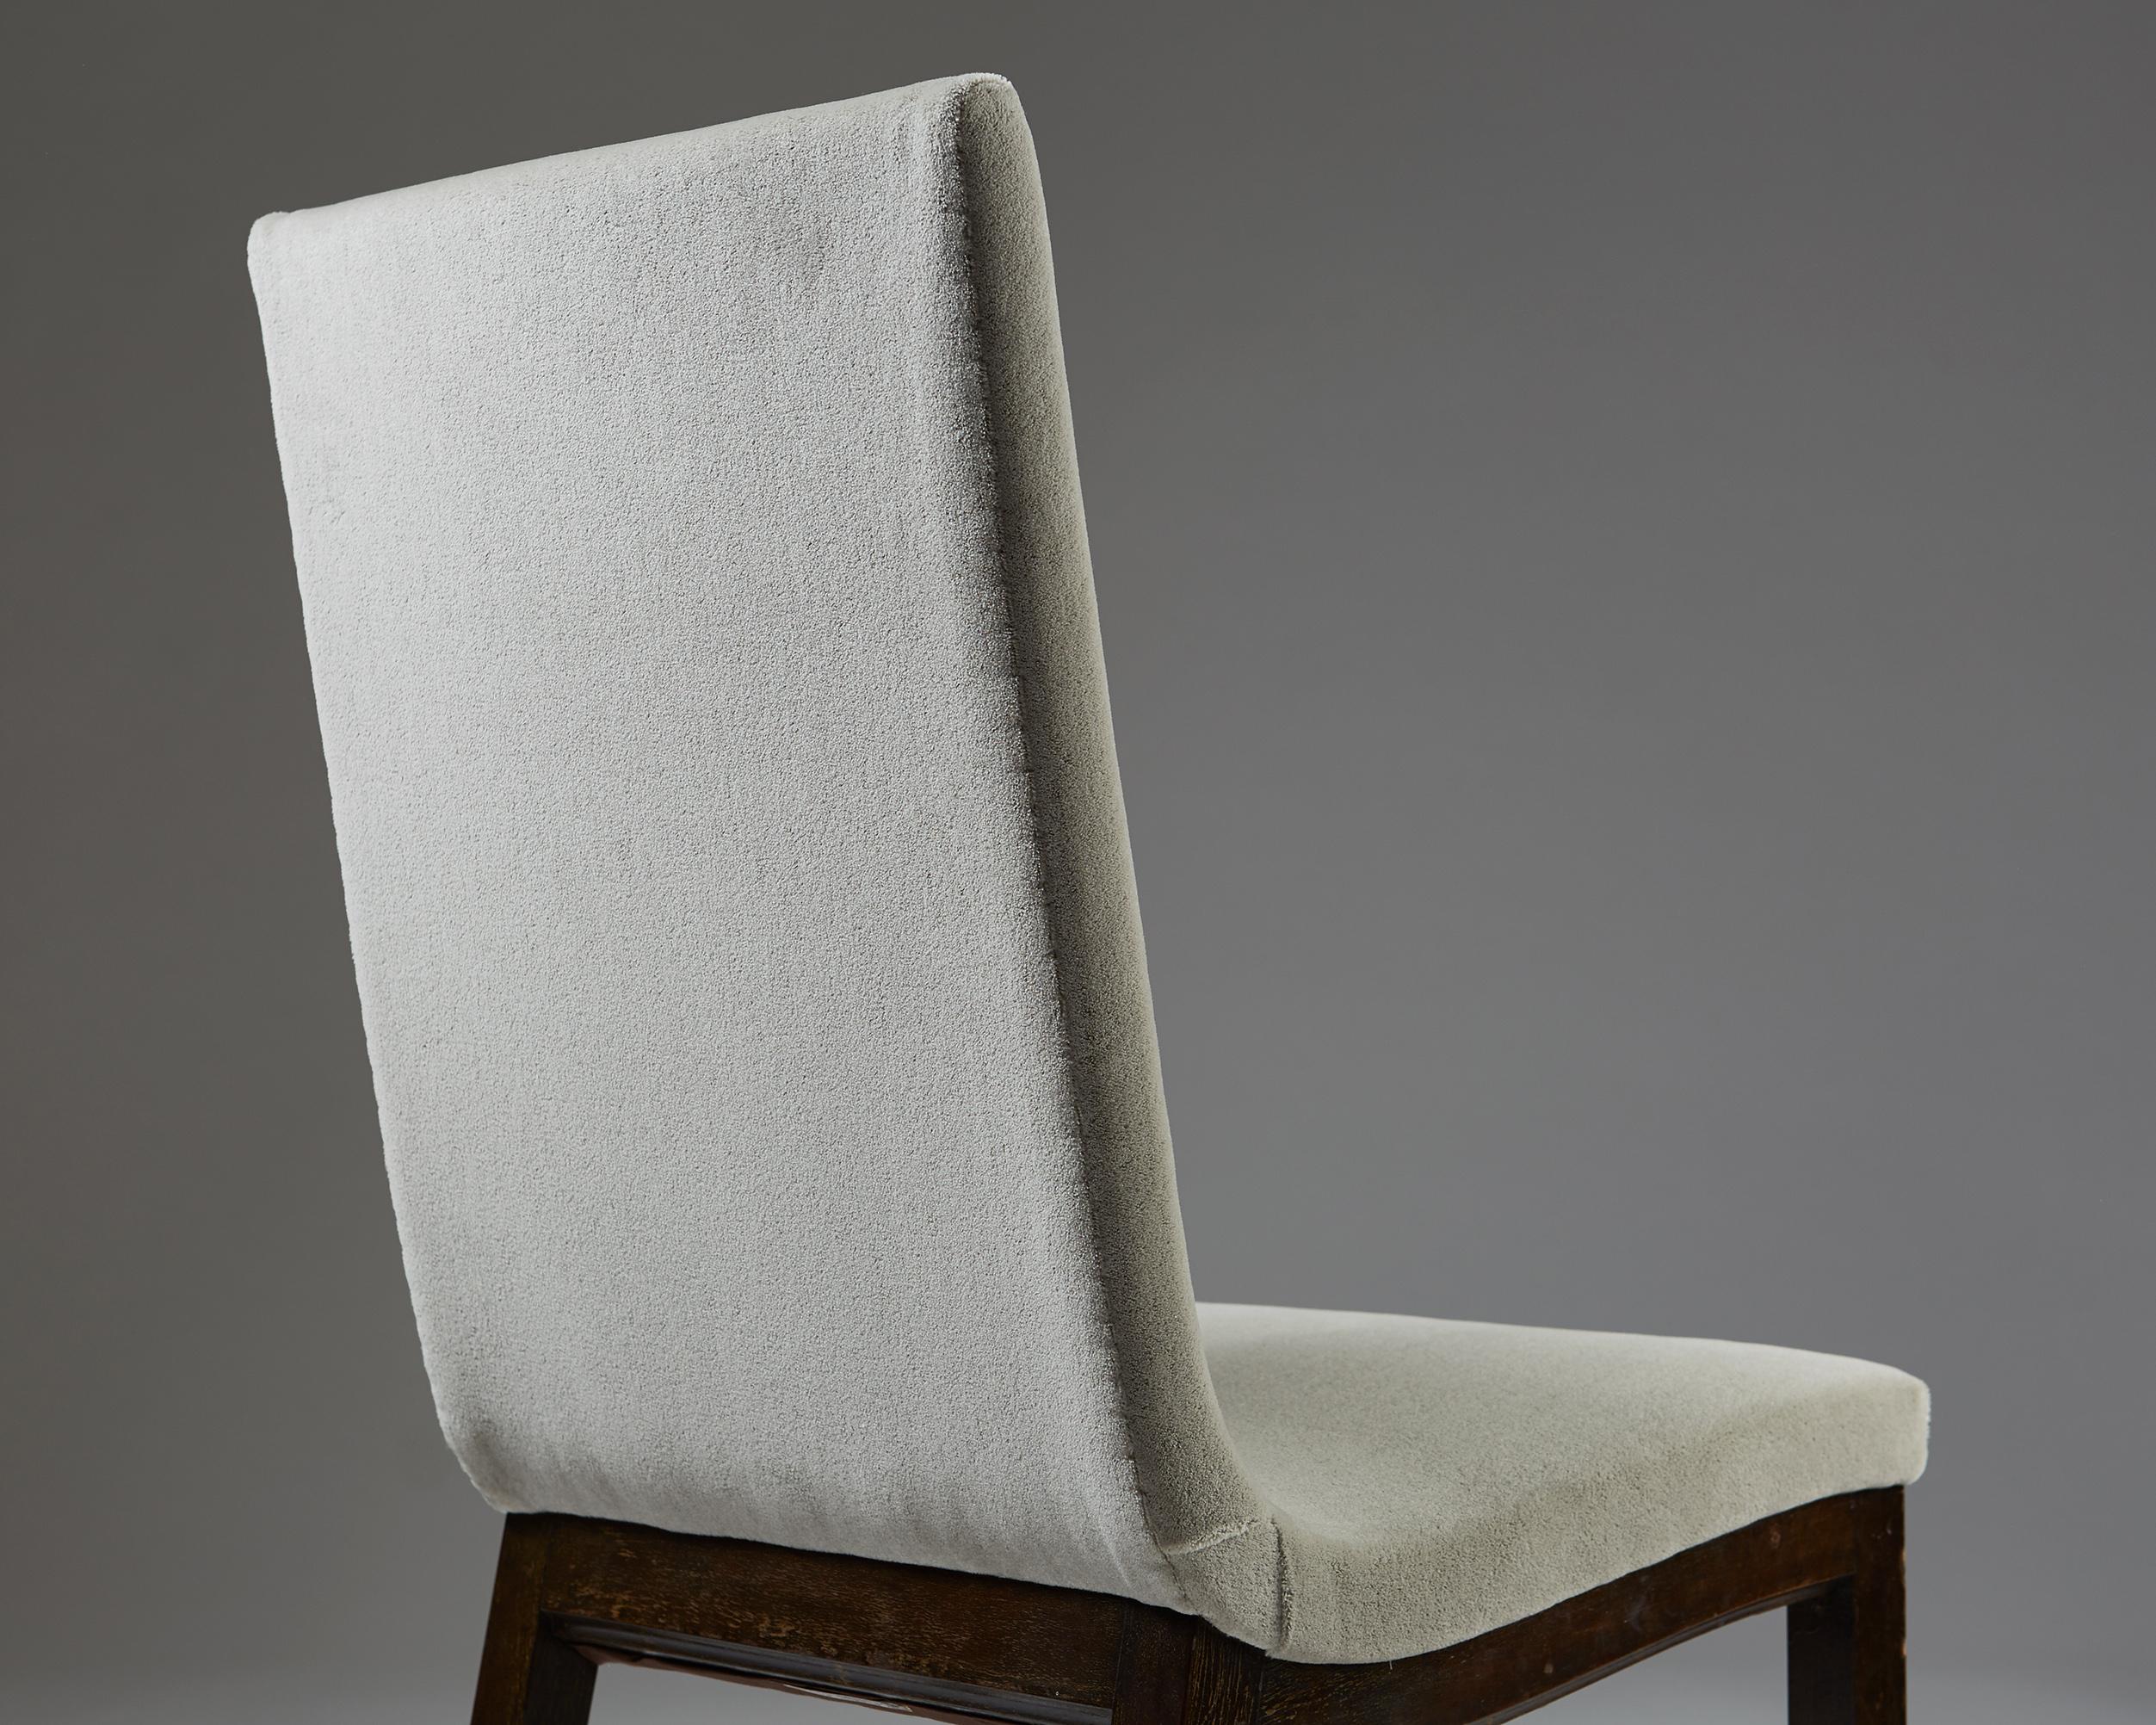 Velvet Set of Three Chairs “Typenko” by Axel Einar Hjorth, Nordiska Kompaniet, Sweden For Sale